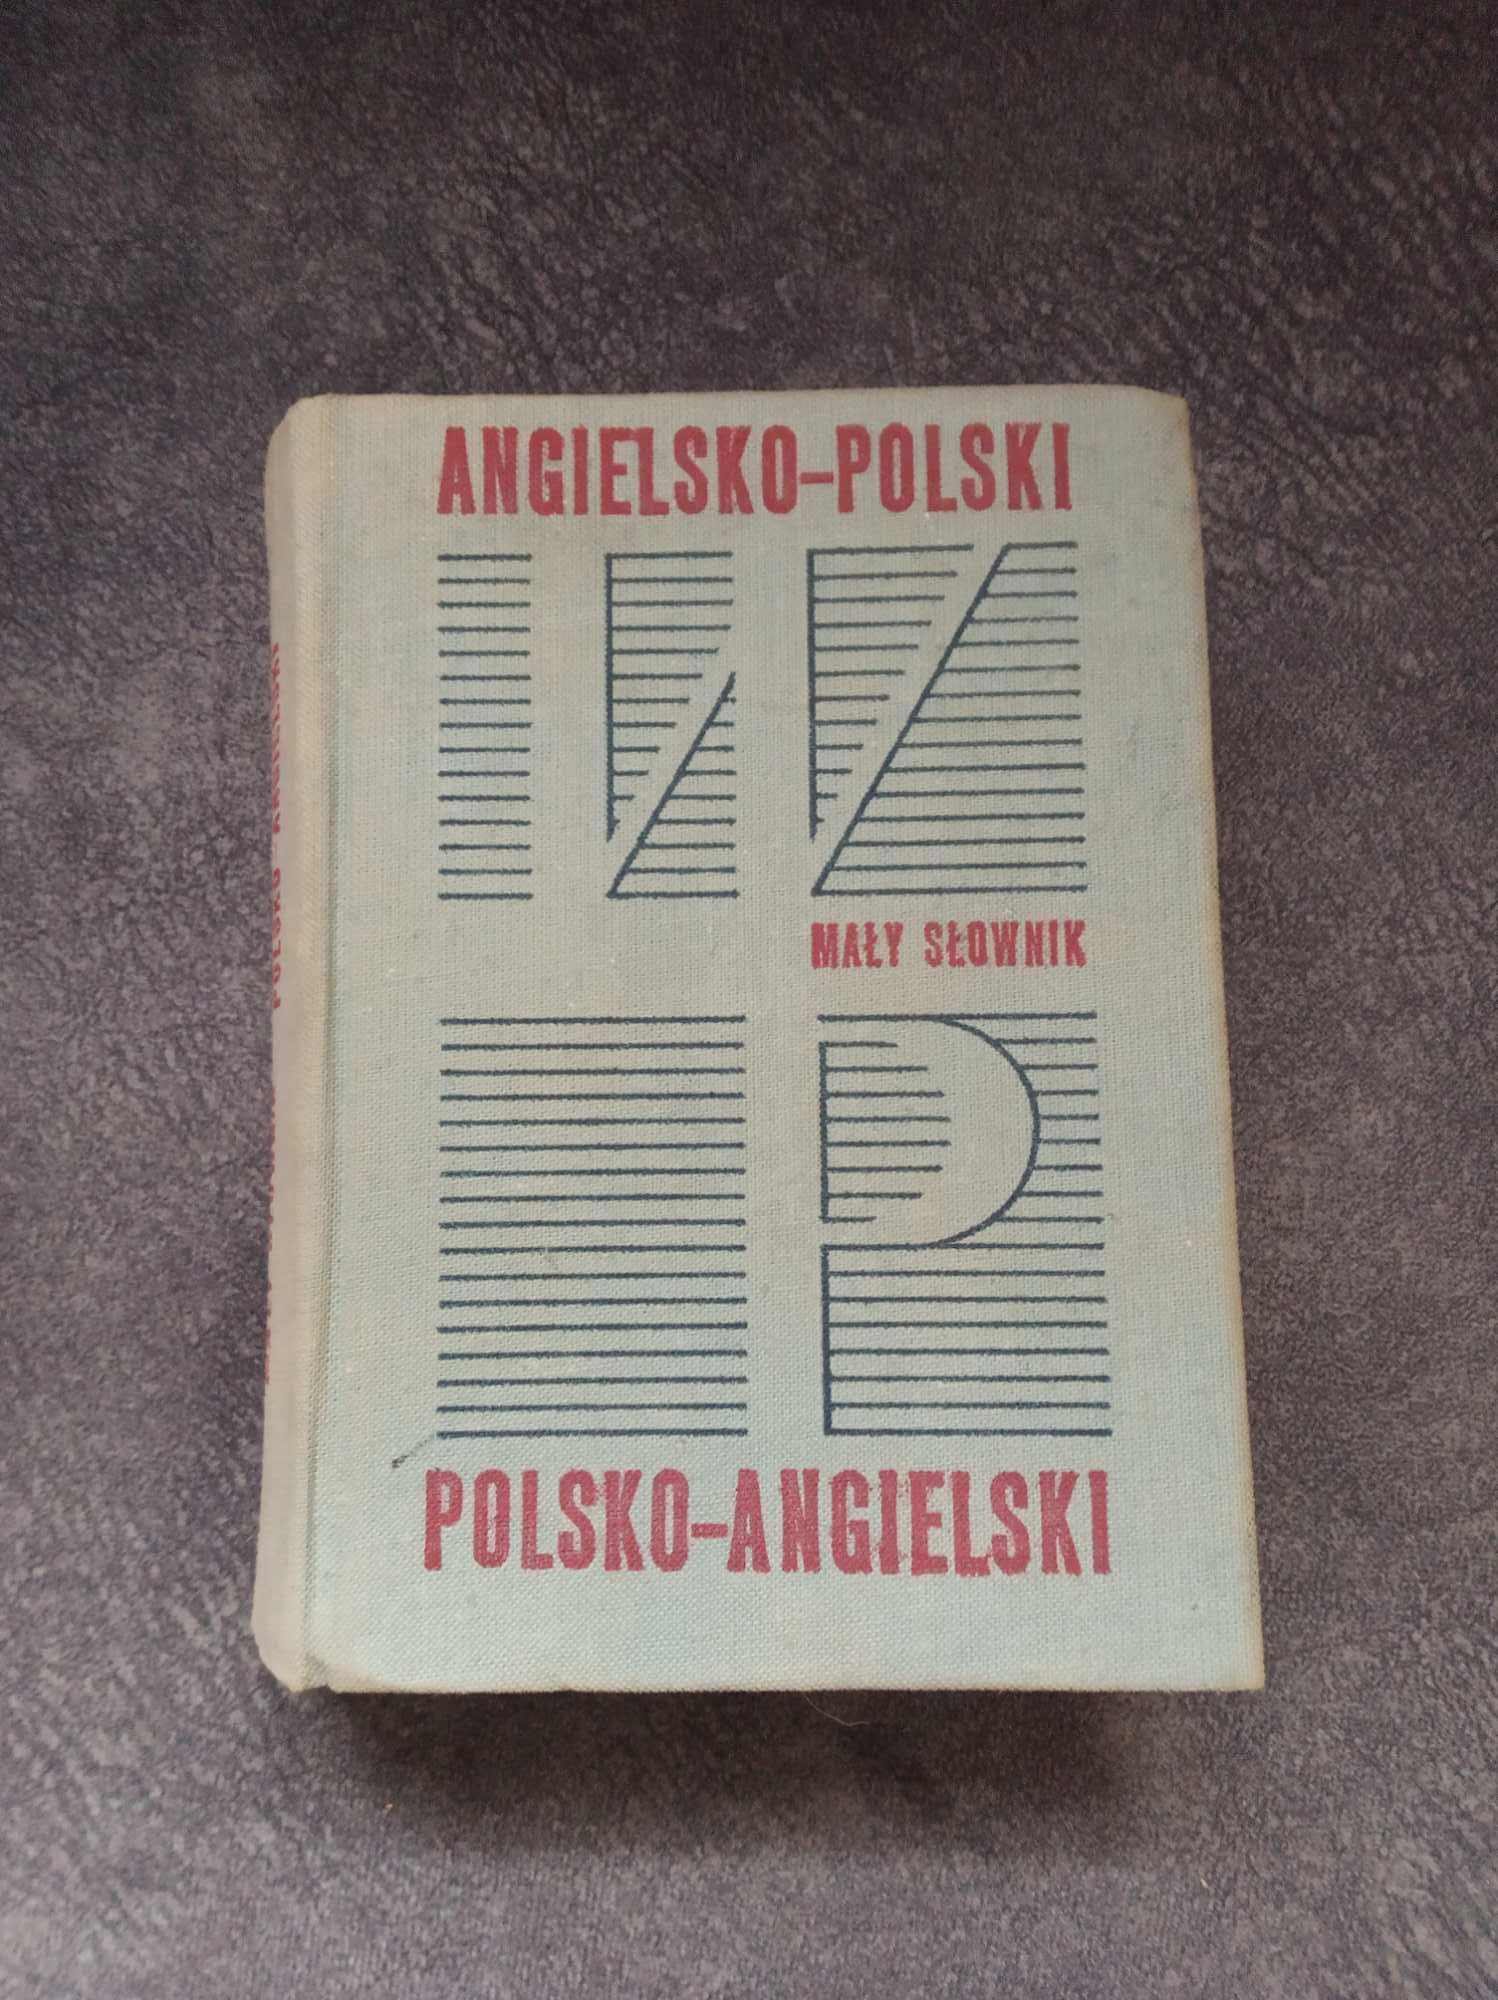 mały słownik angielsko-polski